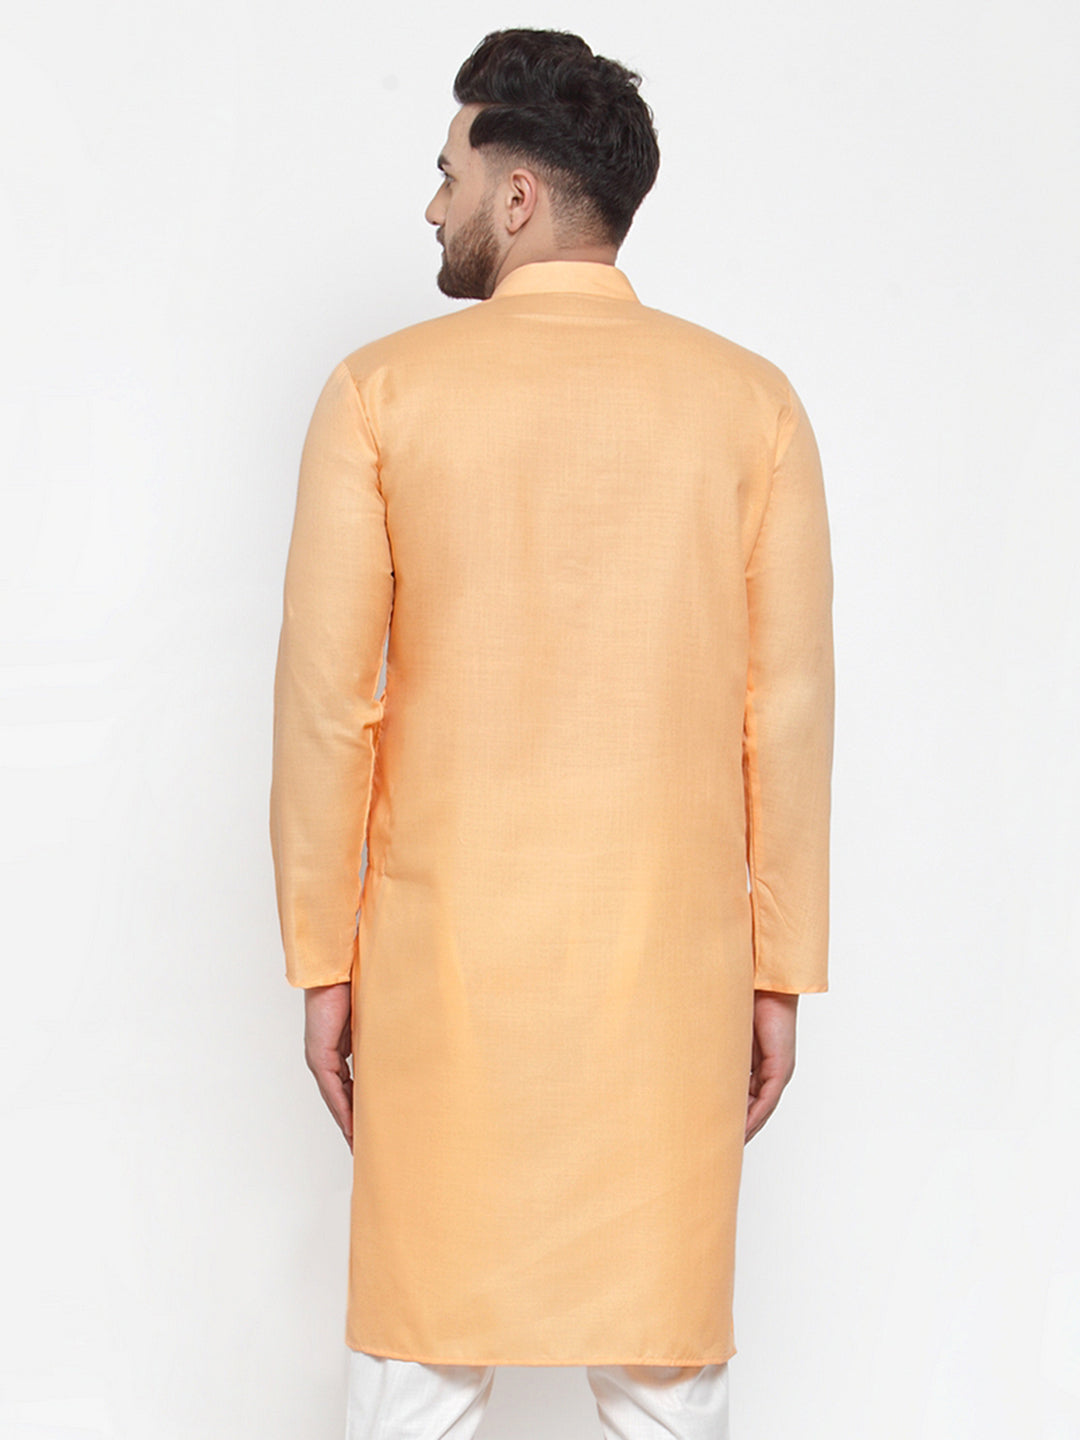 Men's Orange Cotton Solid Kurta Only ( Ko 611 Orange ) - Virat Fashions